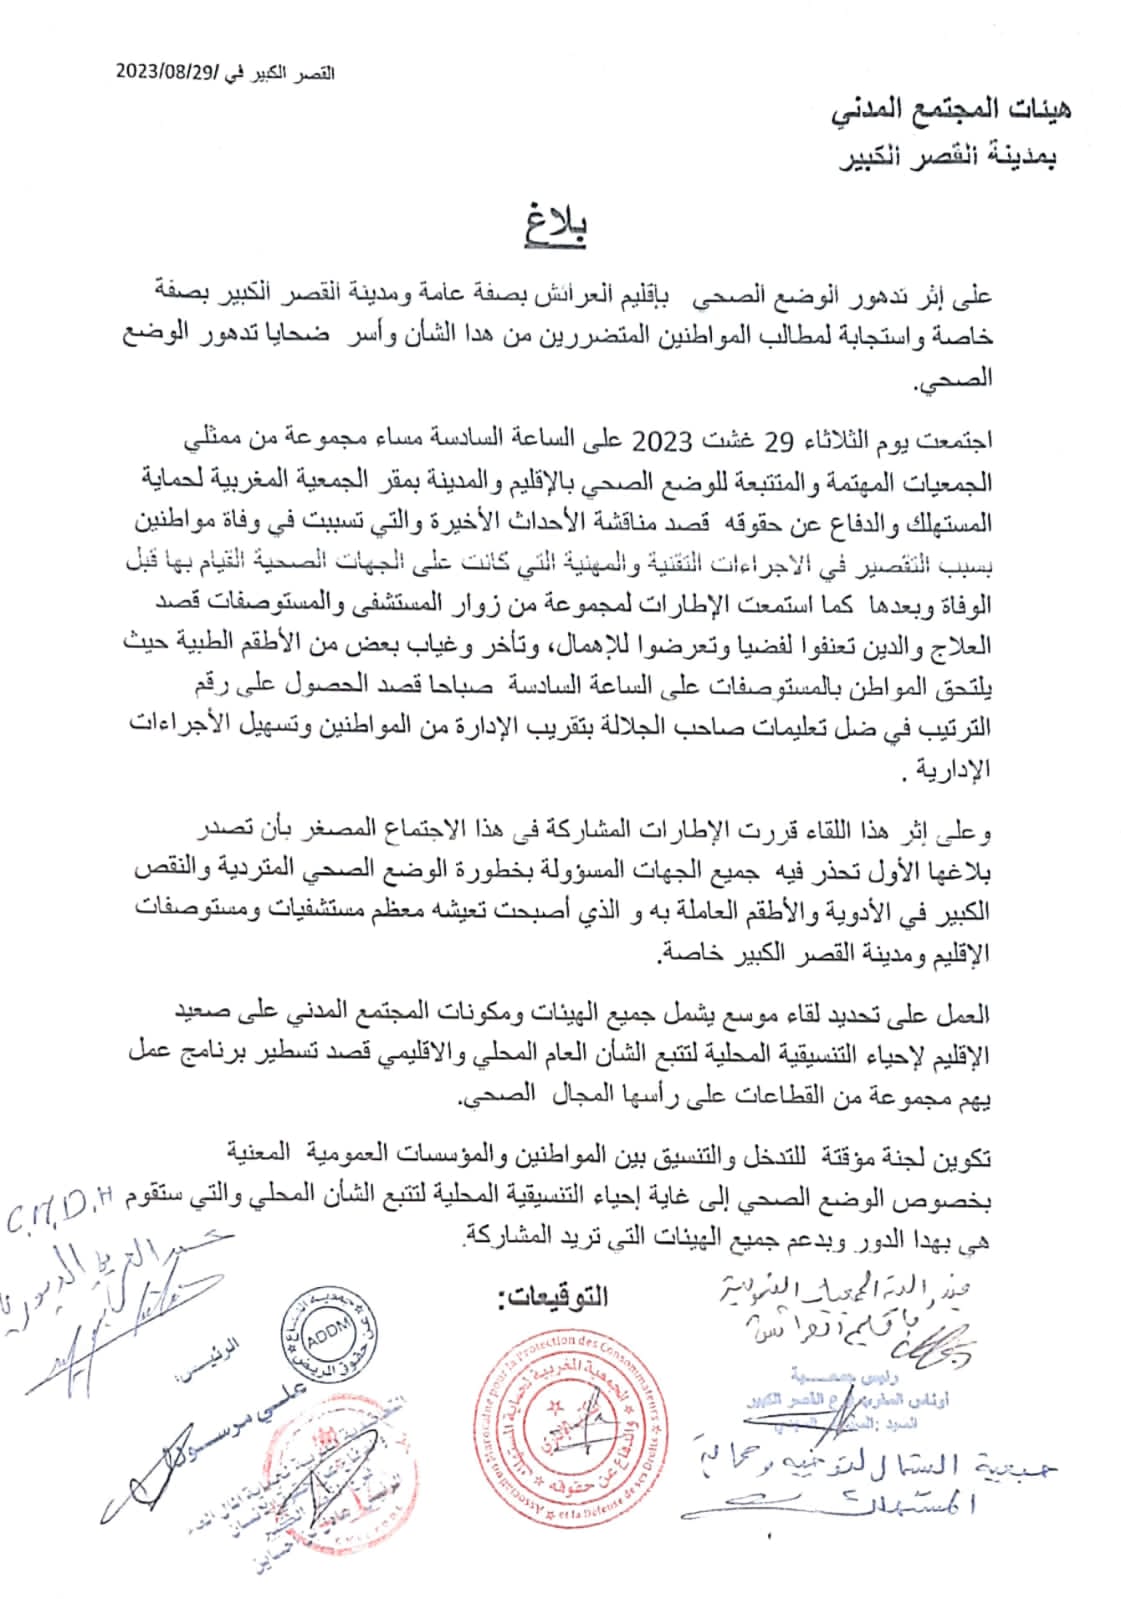 ولادة تنسيقية جديدة لجمعيات حقوقية بمدينة القصر الكبير للمطالبة بتحسين وضعية المريض داخل مستشفى القرب